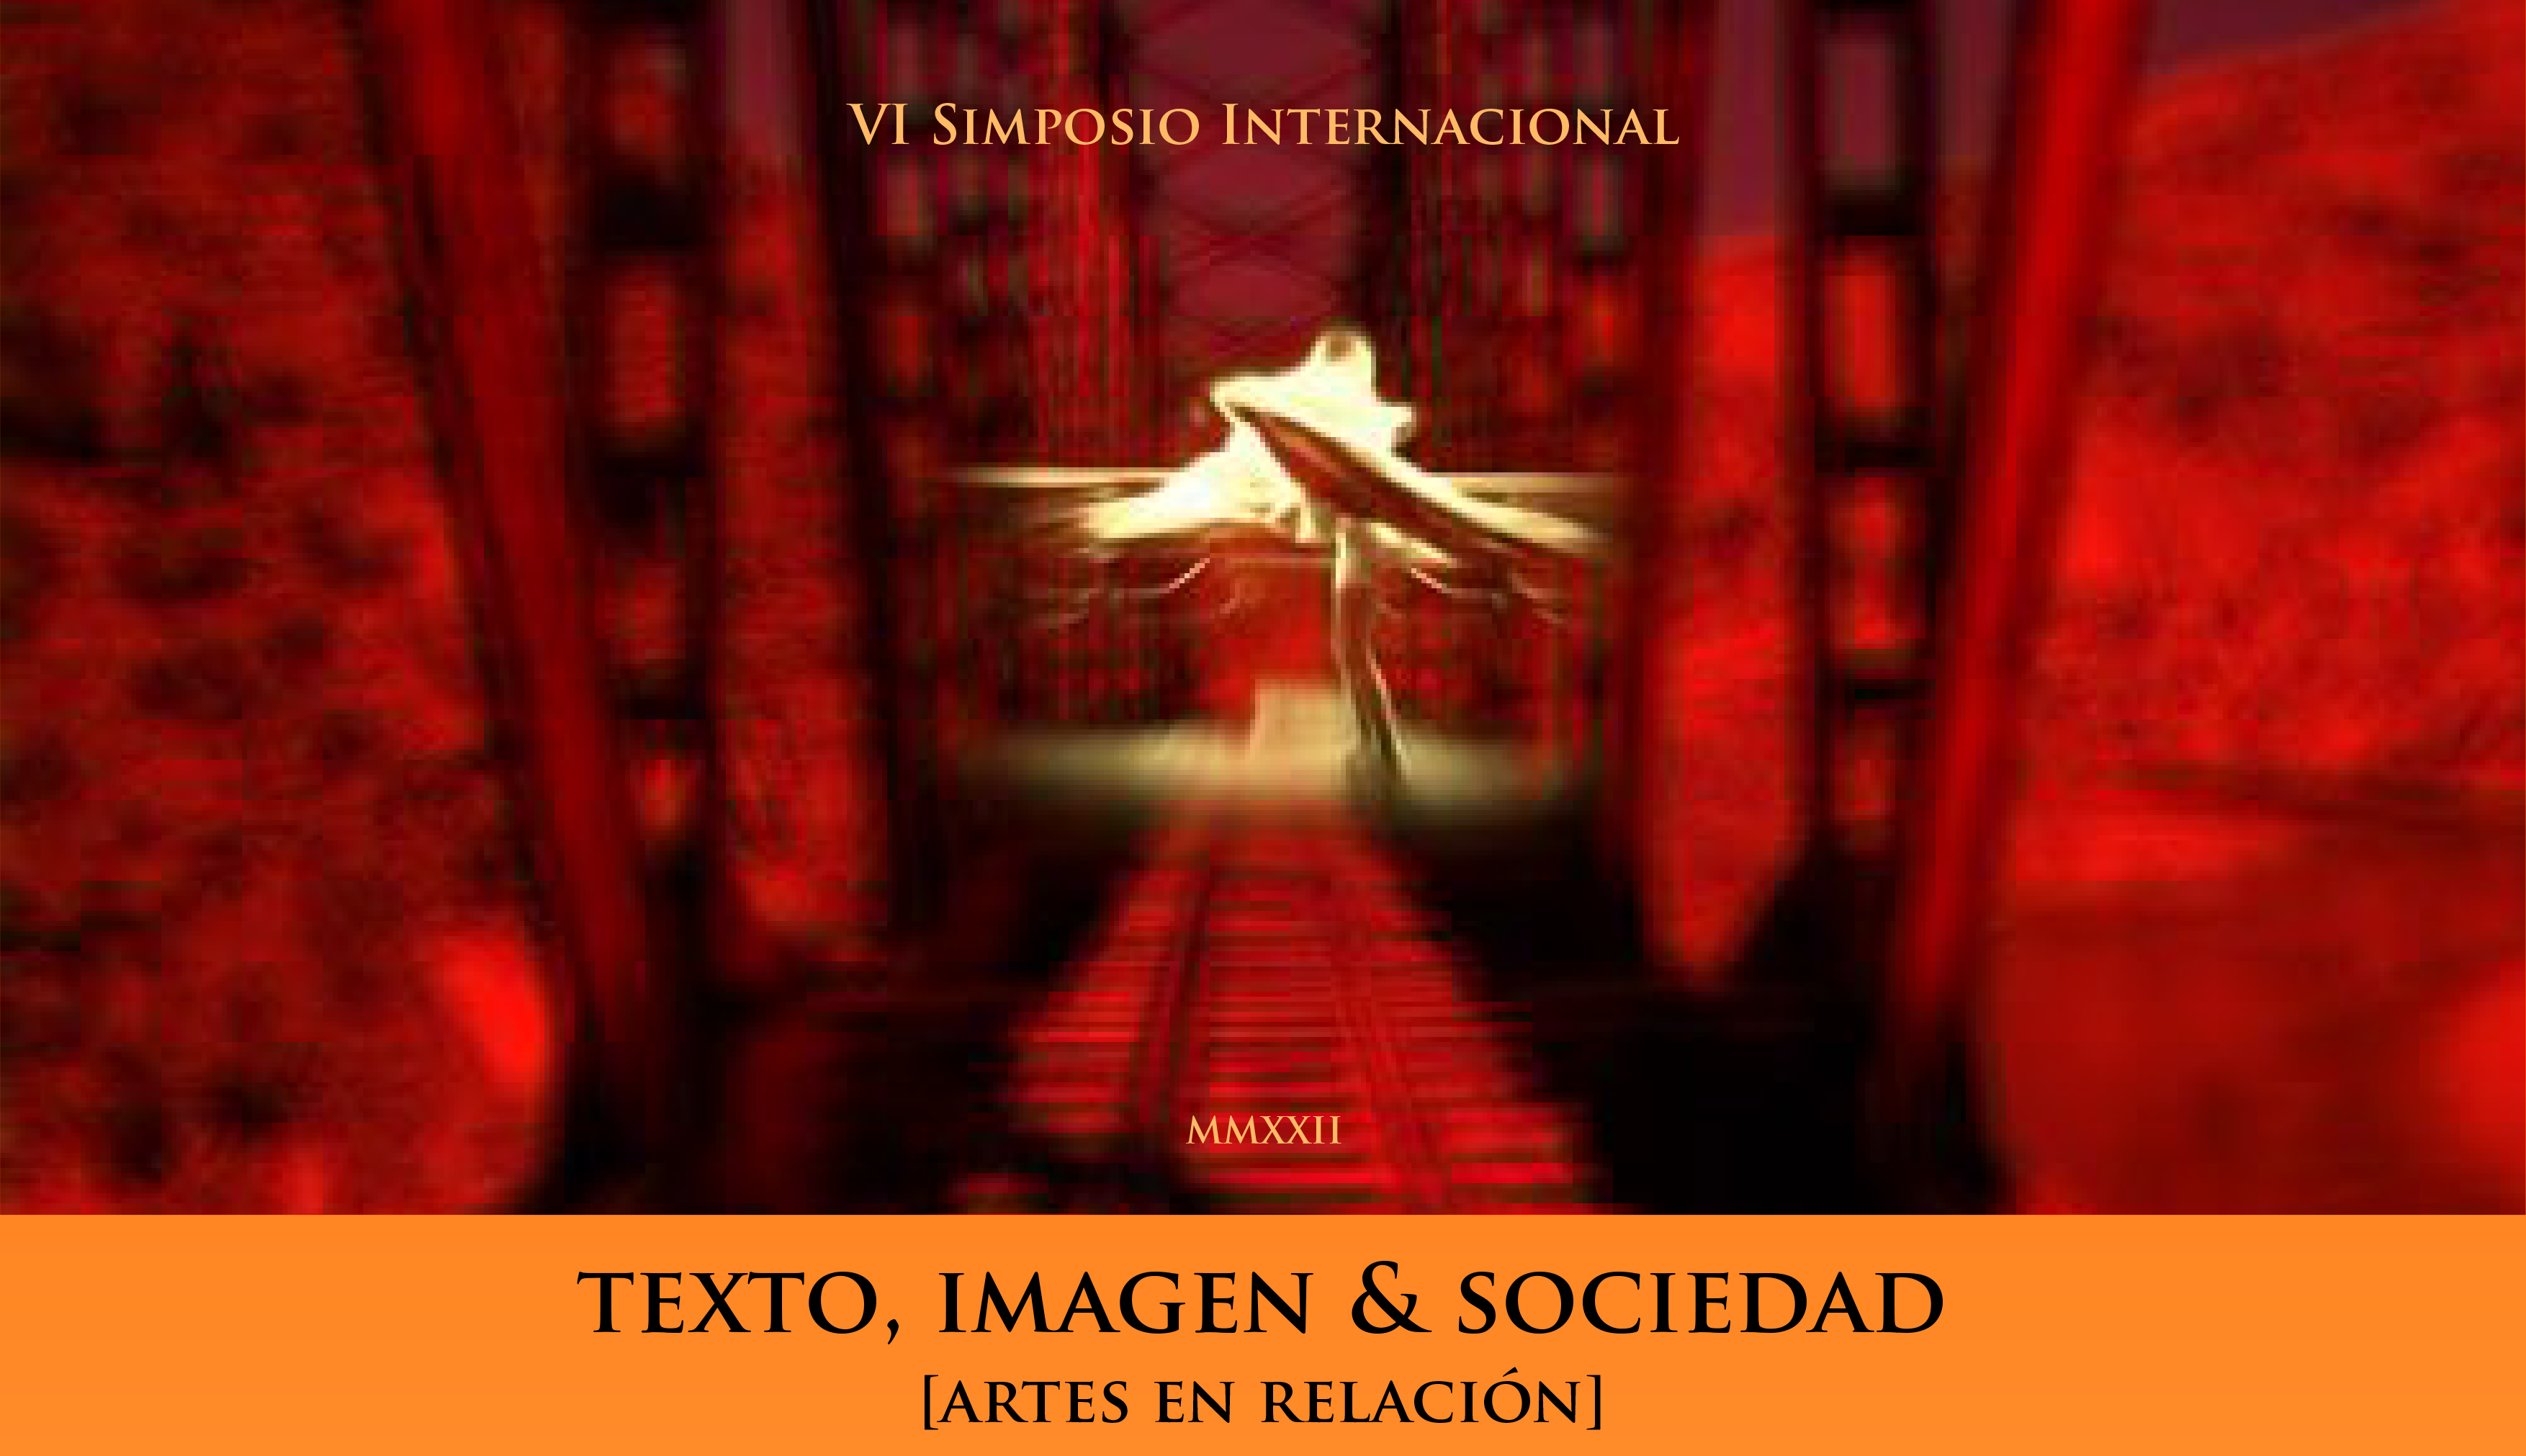 VI Simposio Internacional "Texto, imagen & sociedad [artes en relación]